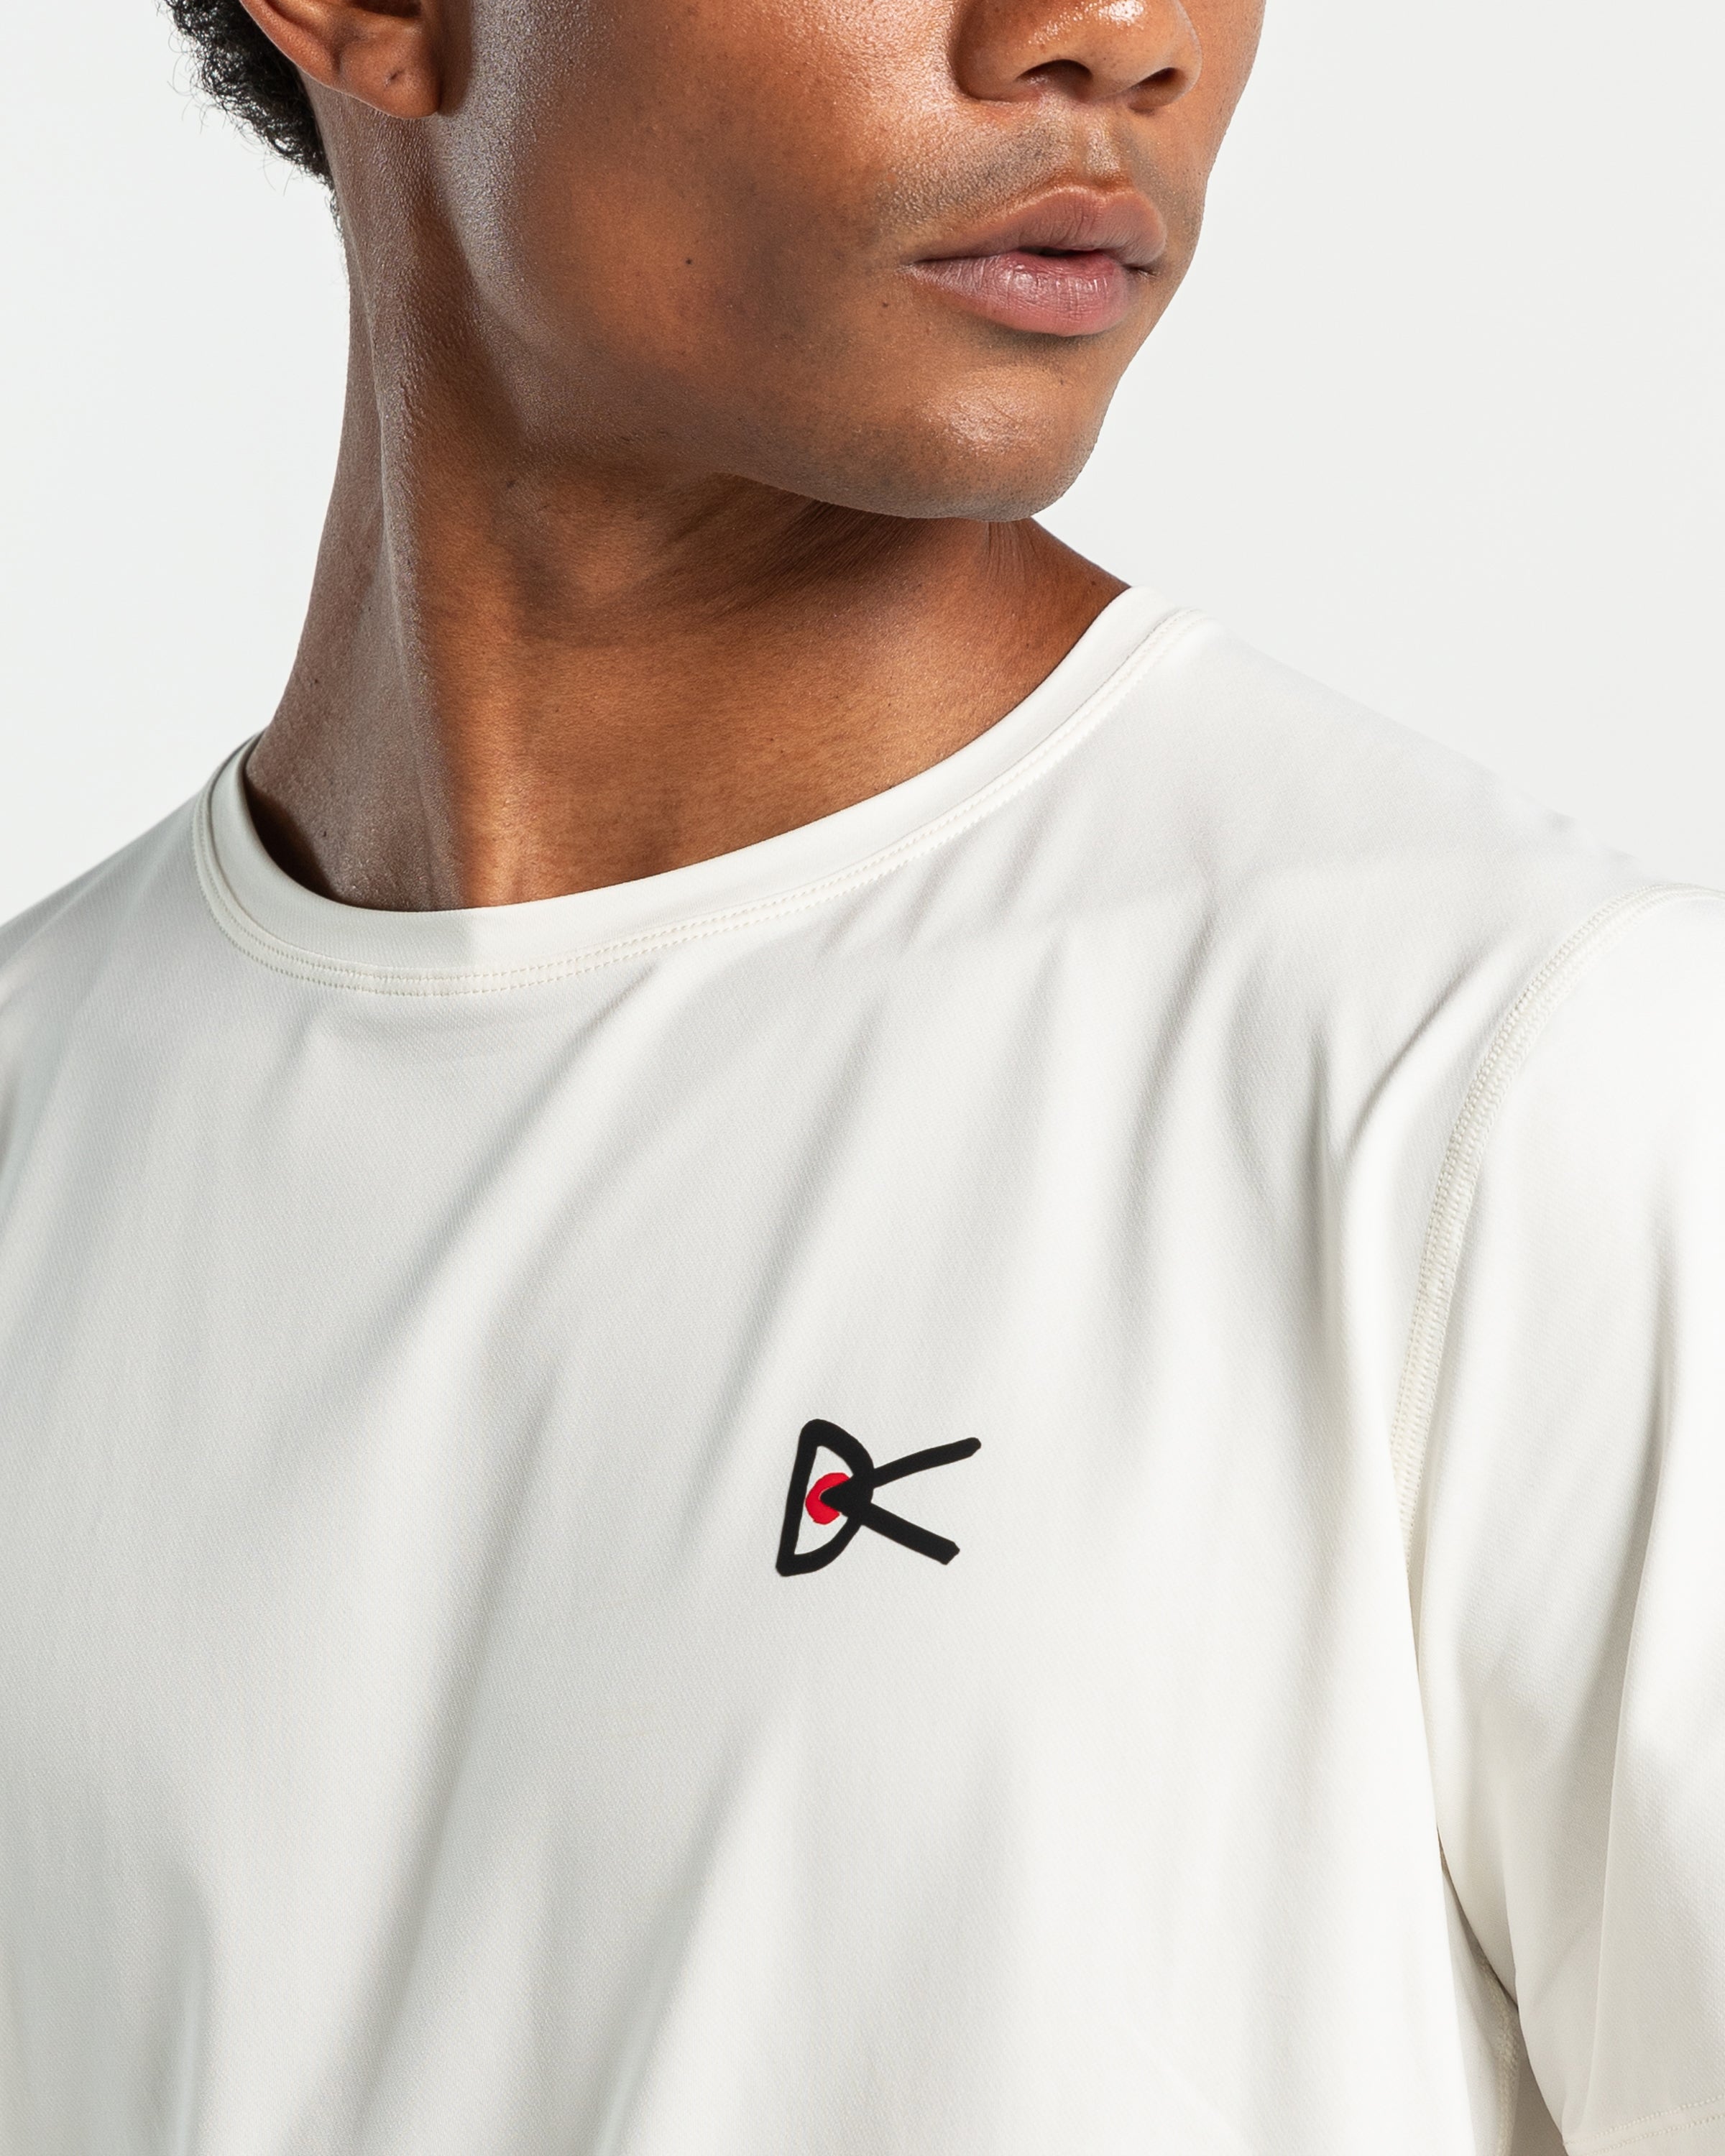 Deva Short Sleeve Shirt in White